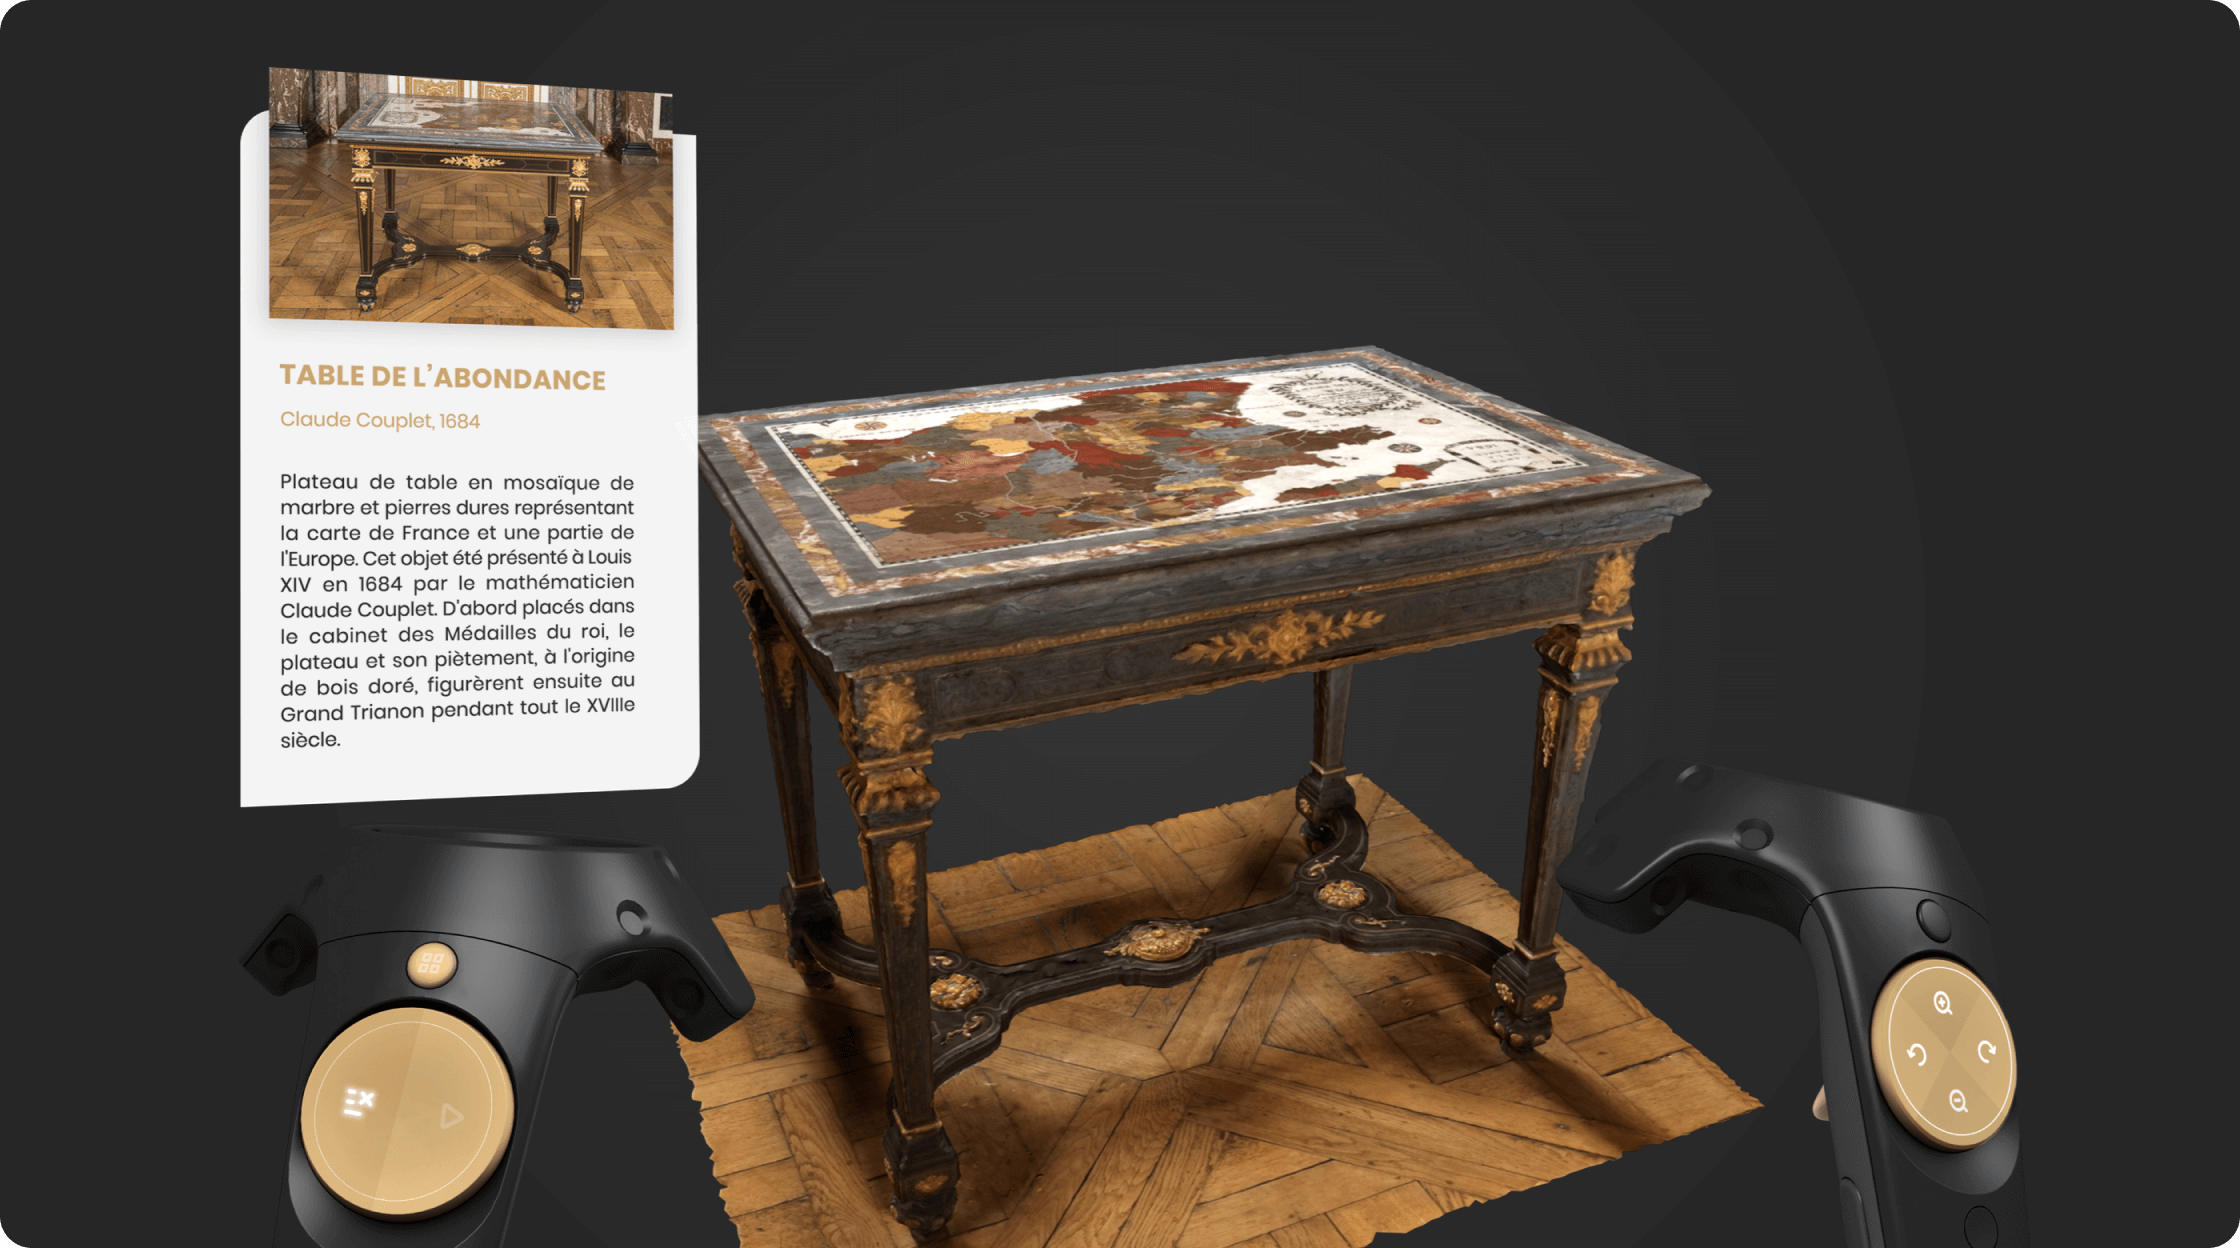 3D object : "la table de l'abondance" from Versailles